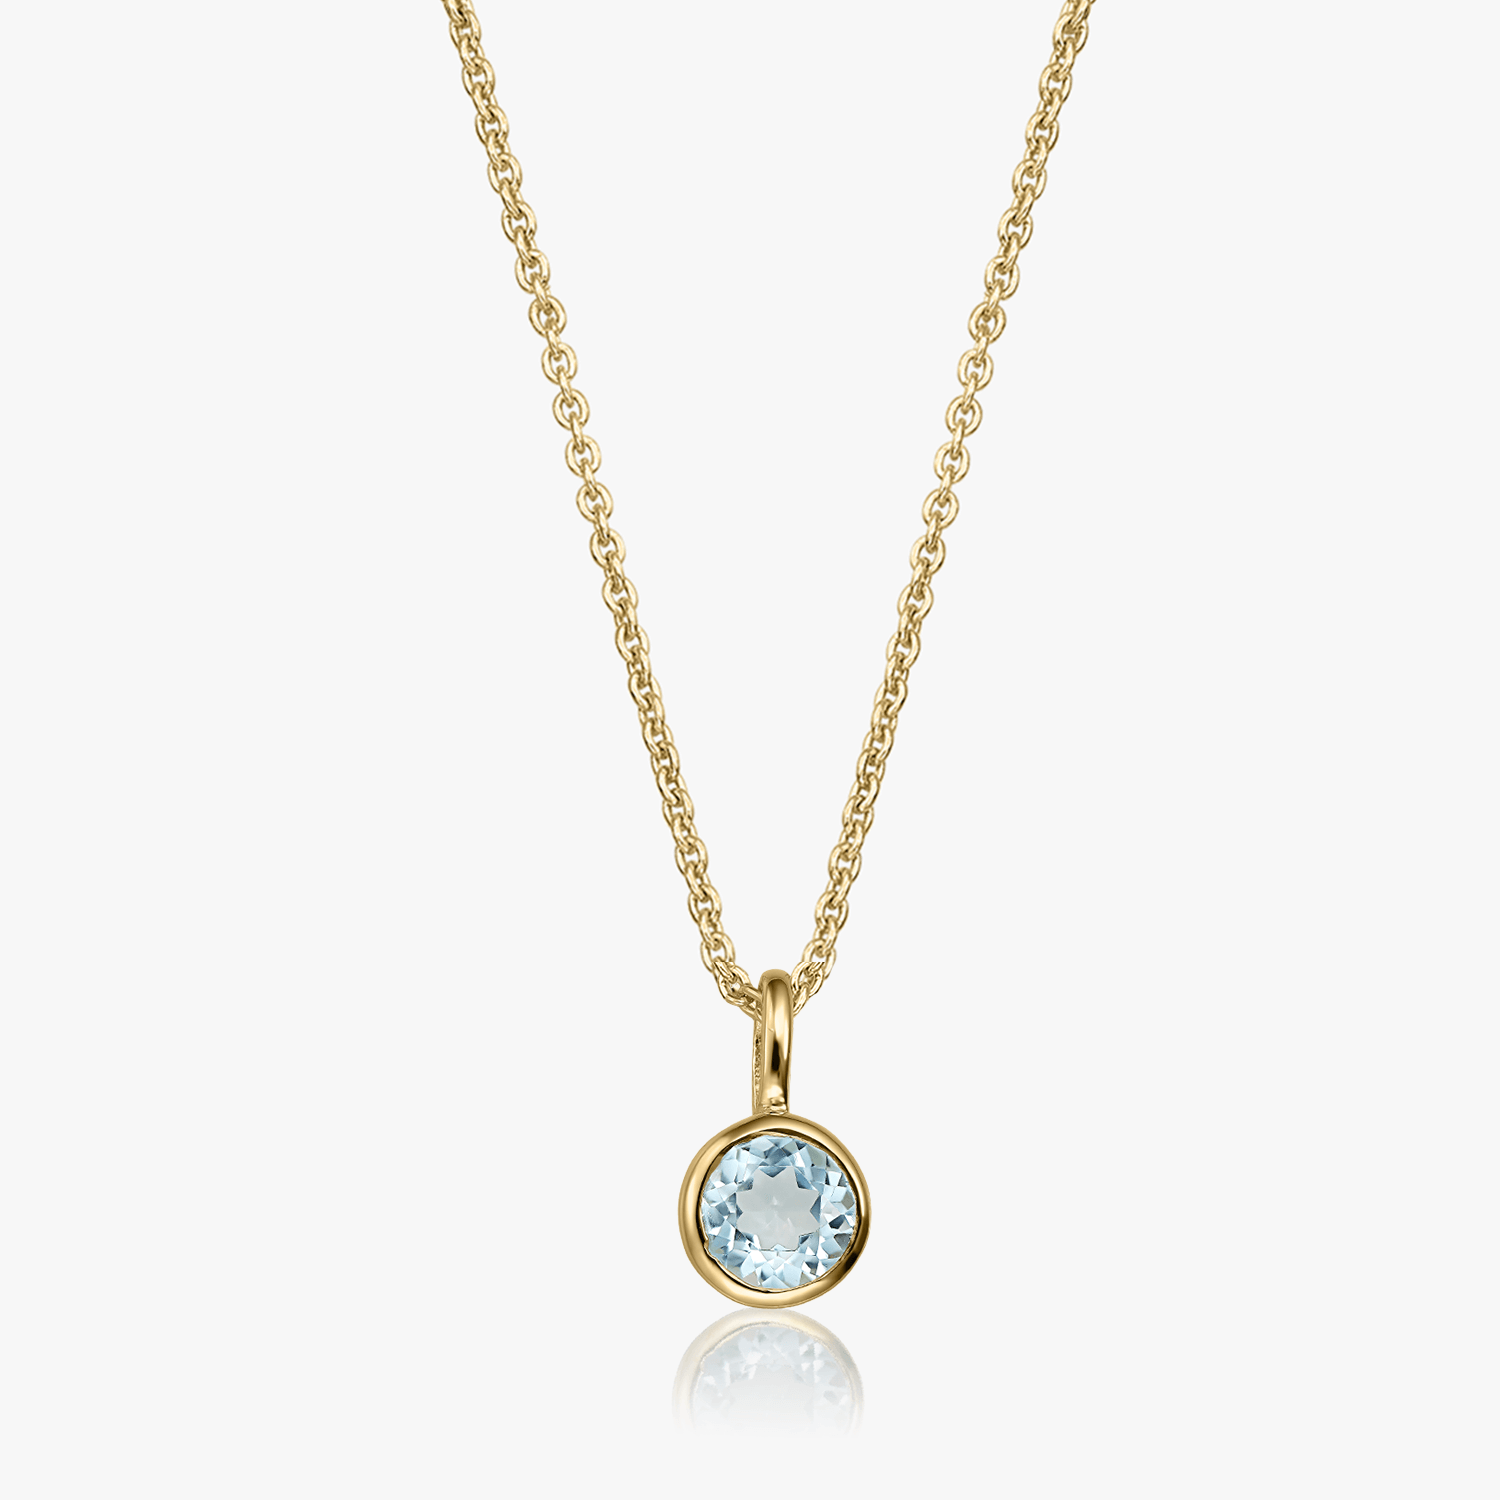 Silver necklace Birthstone Golden December - Blue Topaz